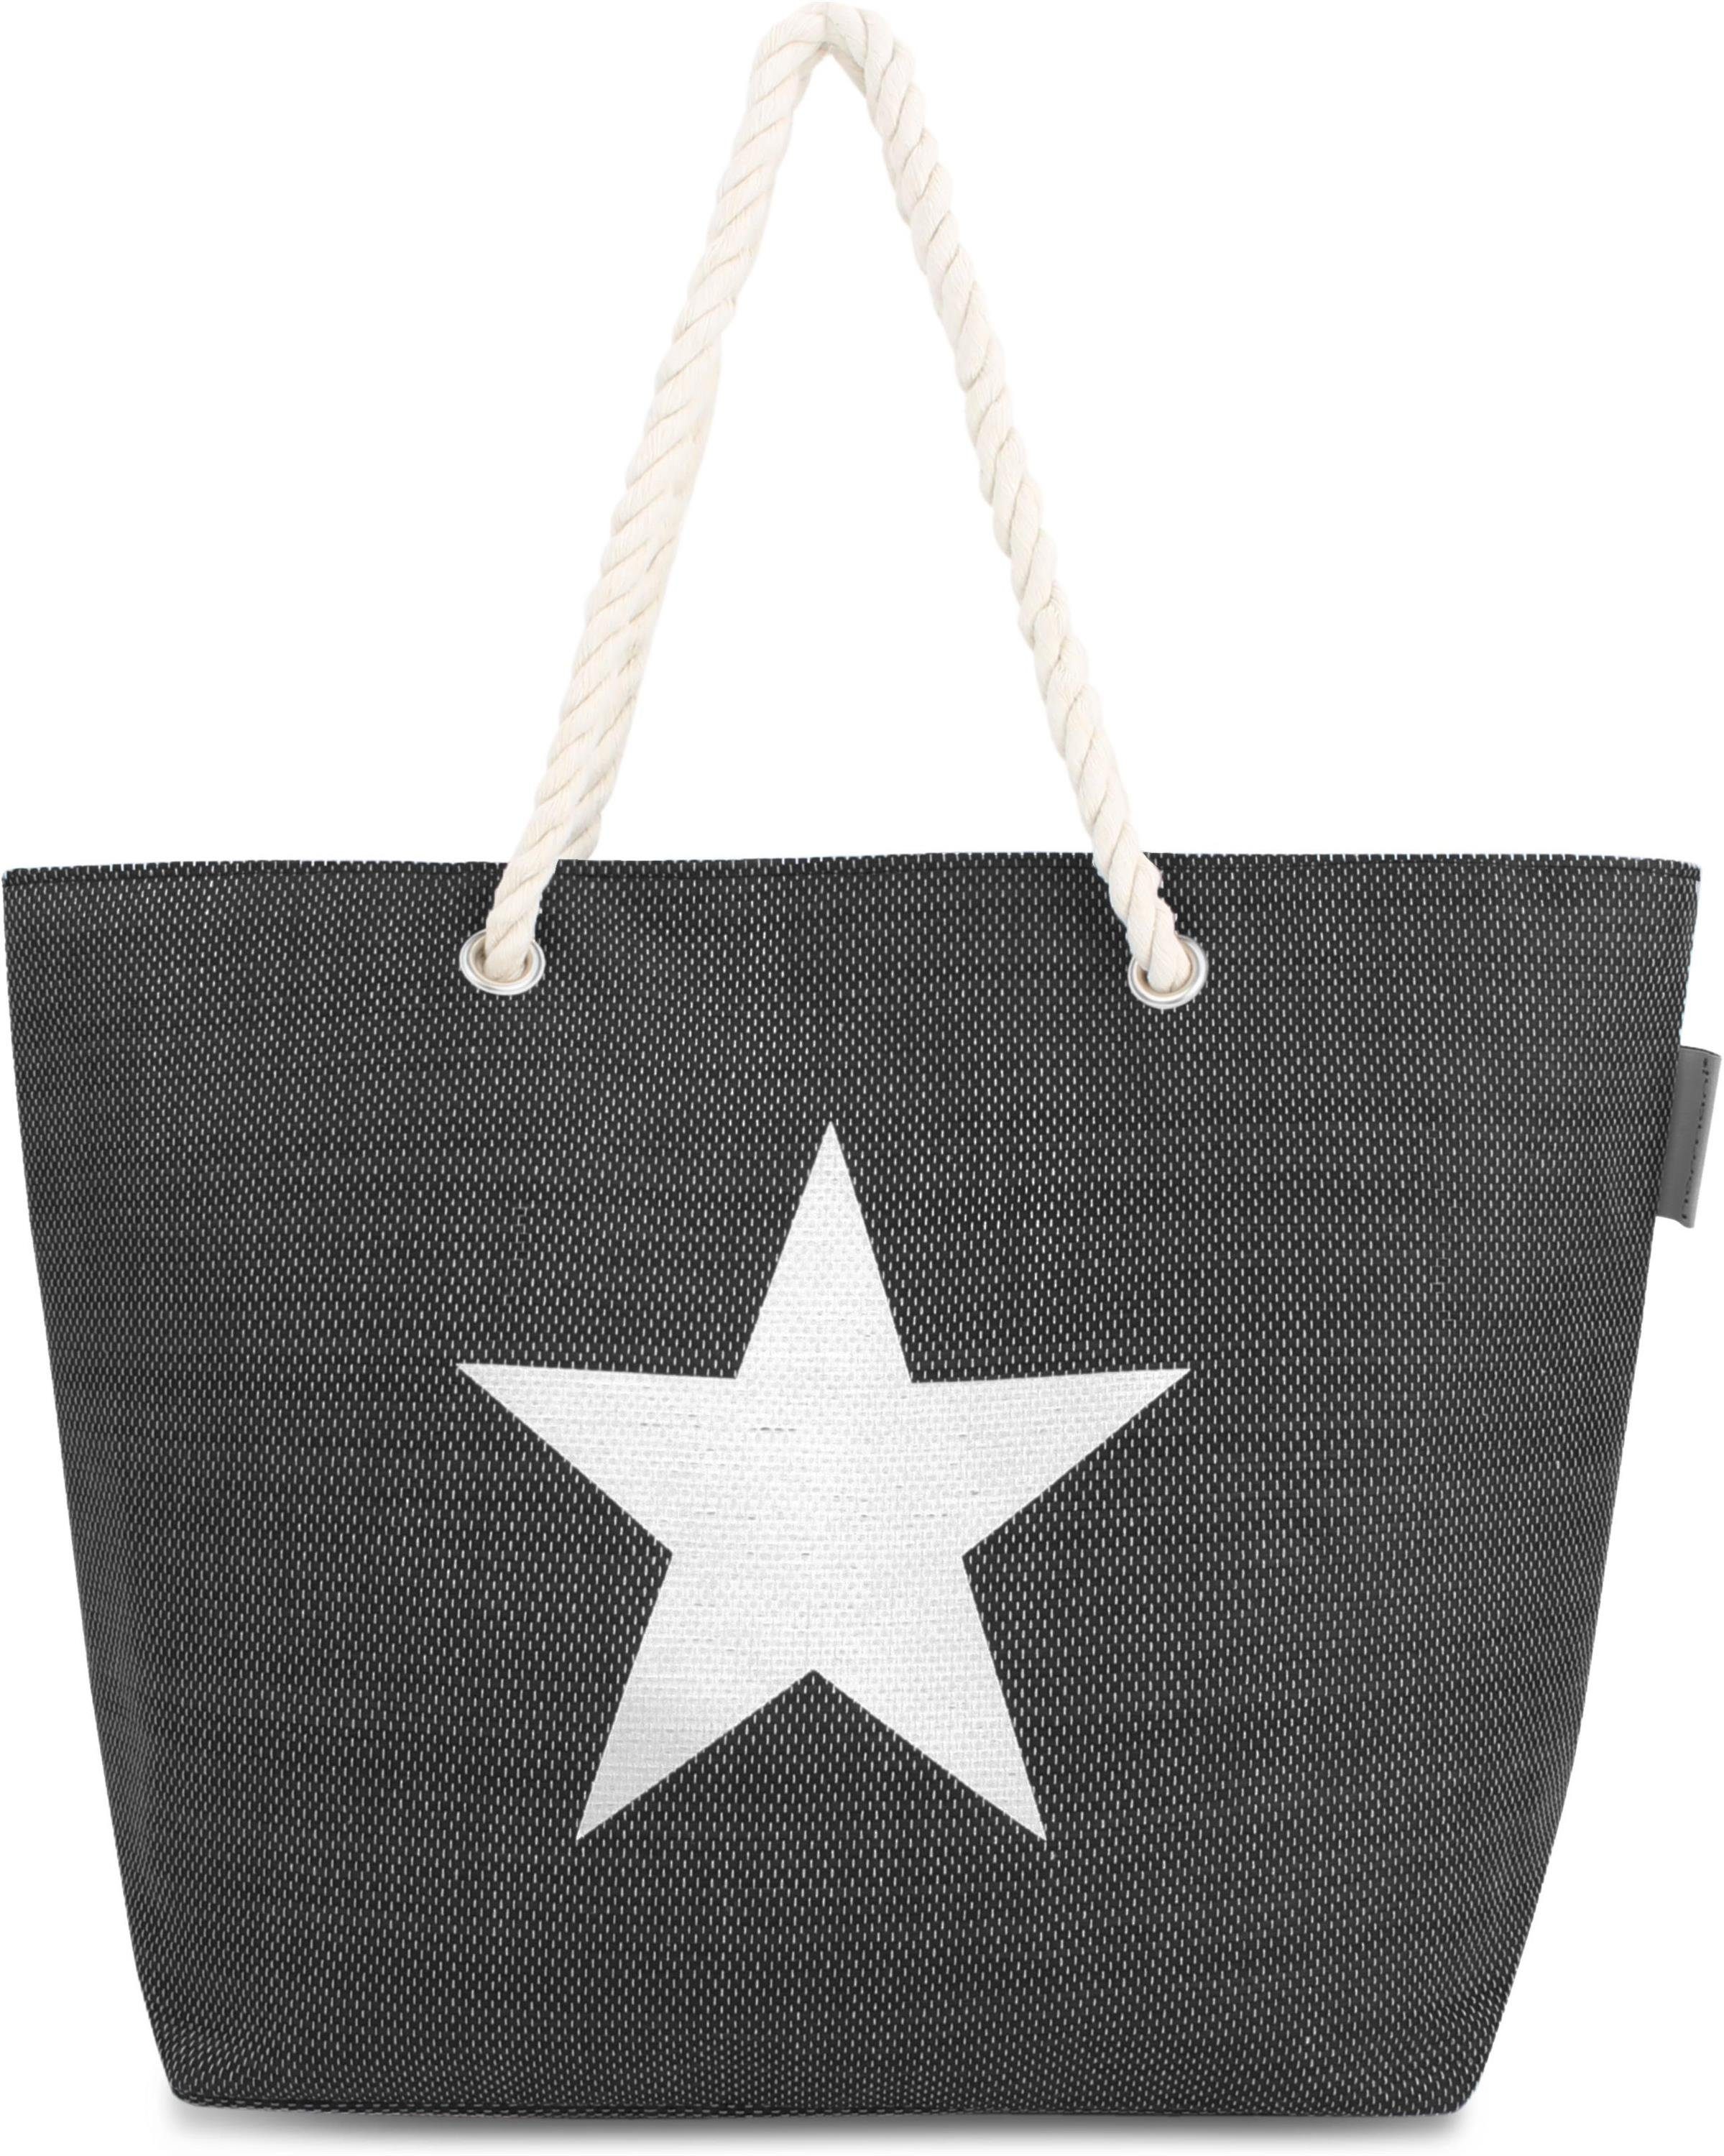 als Sommer-Umhängetasche, Strandtasche, Schultertasche tragbar Henkeltasche Strandtasche Black normani Bequeme Star